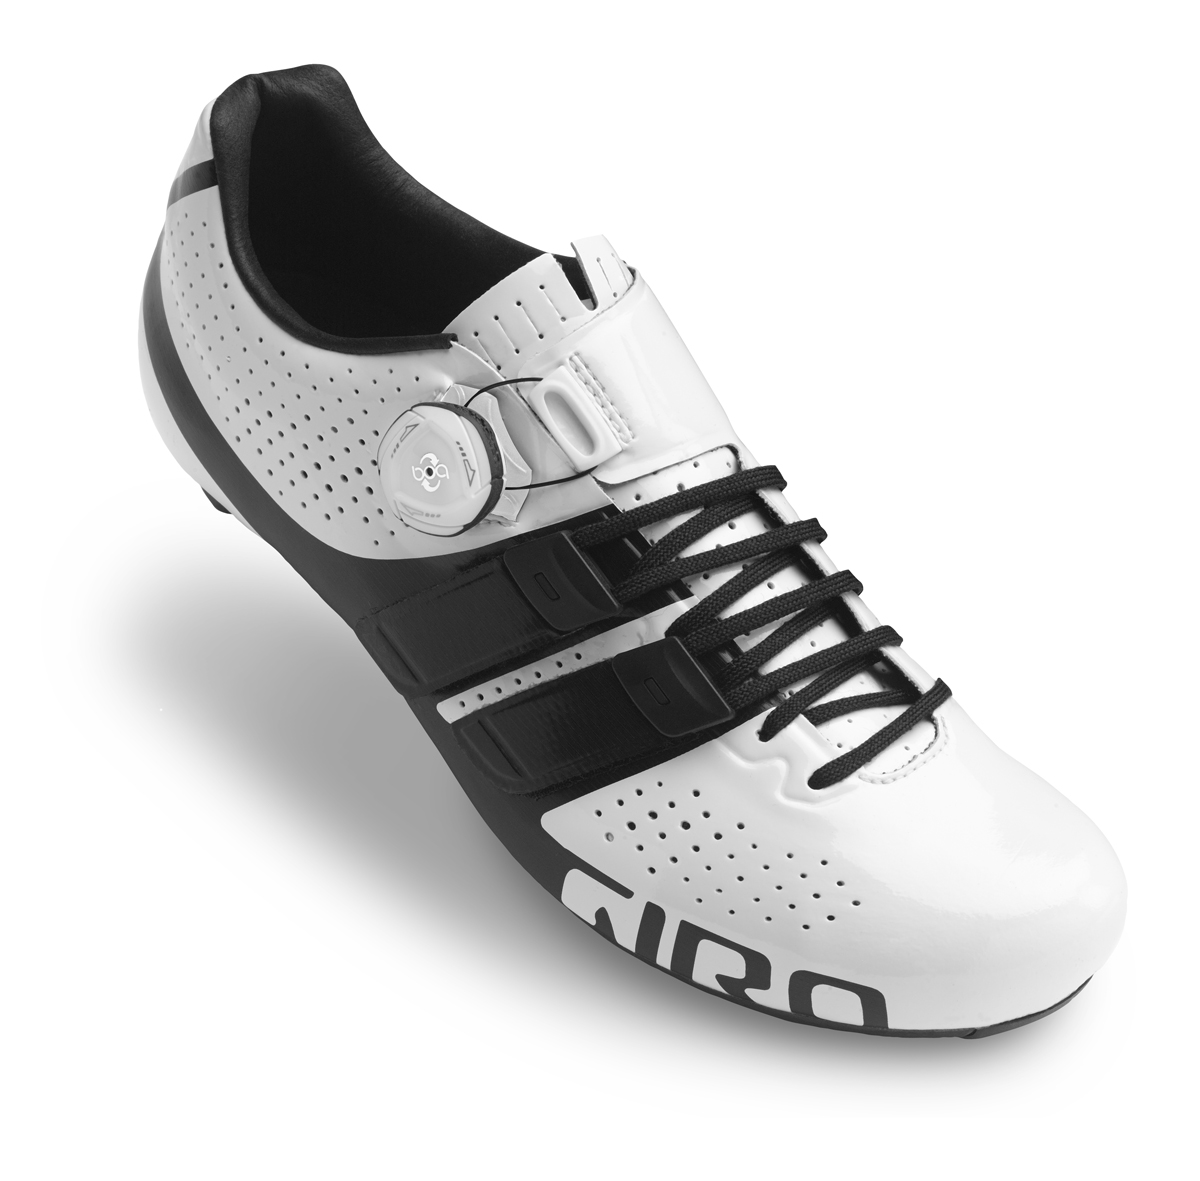 EVA-Fußbett   Gr.41 Schwarz Microfaser Giro Apeckx HV Radsport Rennrad Schuhe